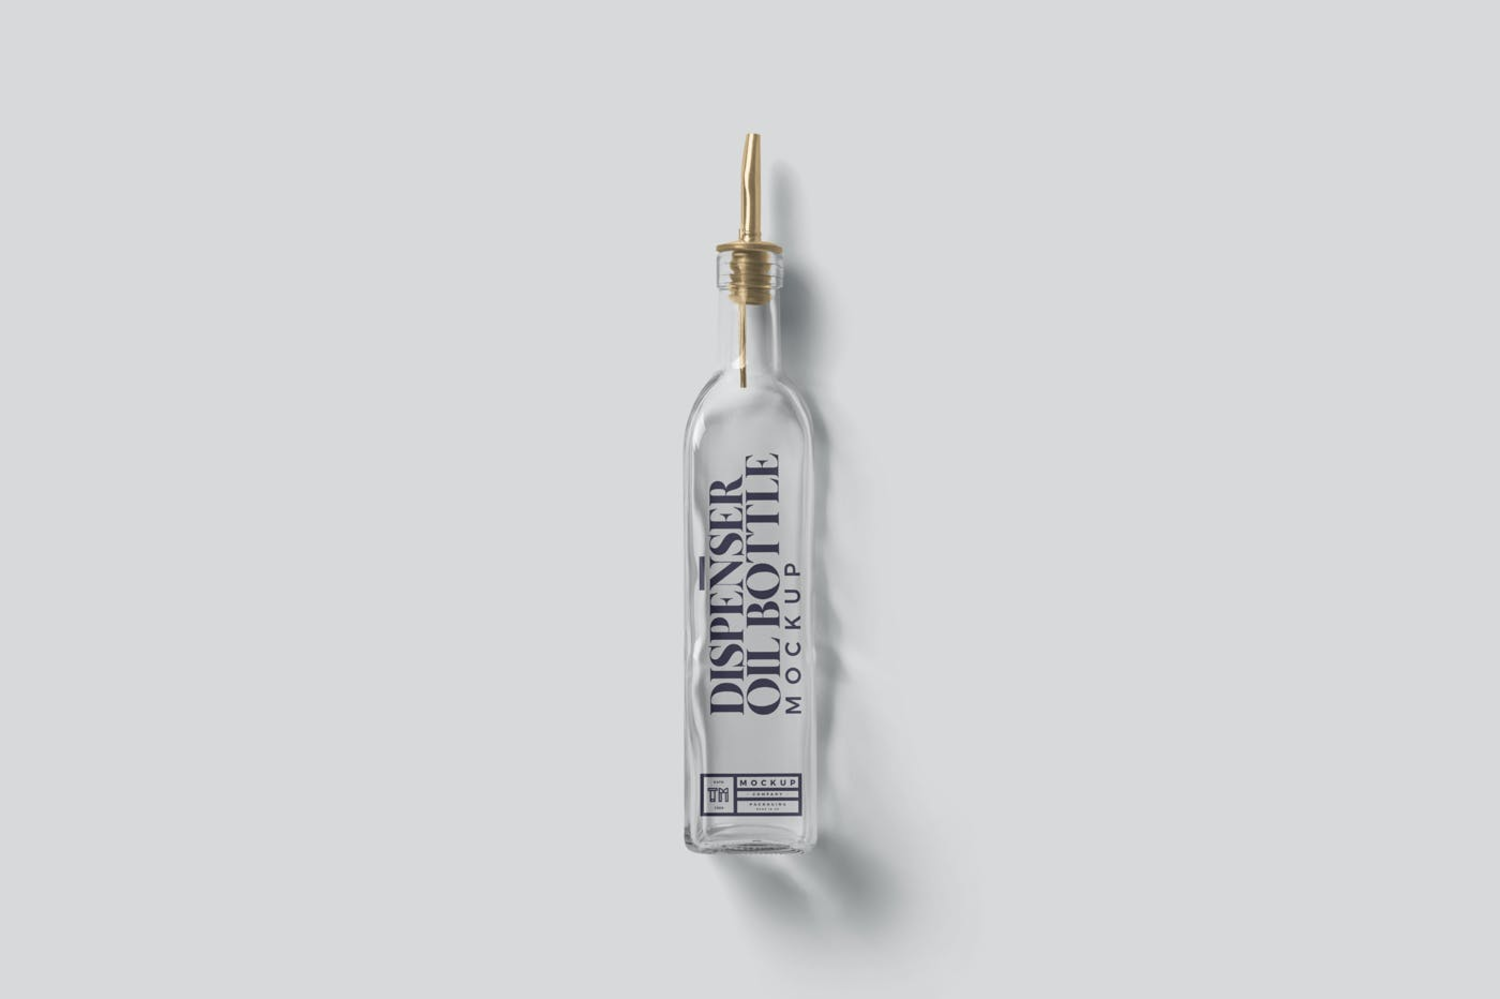 3917 5款长方形精油玻璃瓶标签设计展示贴图ps包装样机素材国外设计模板 Oil Bottle Mockups@GOOODME.COM